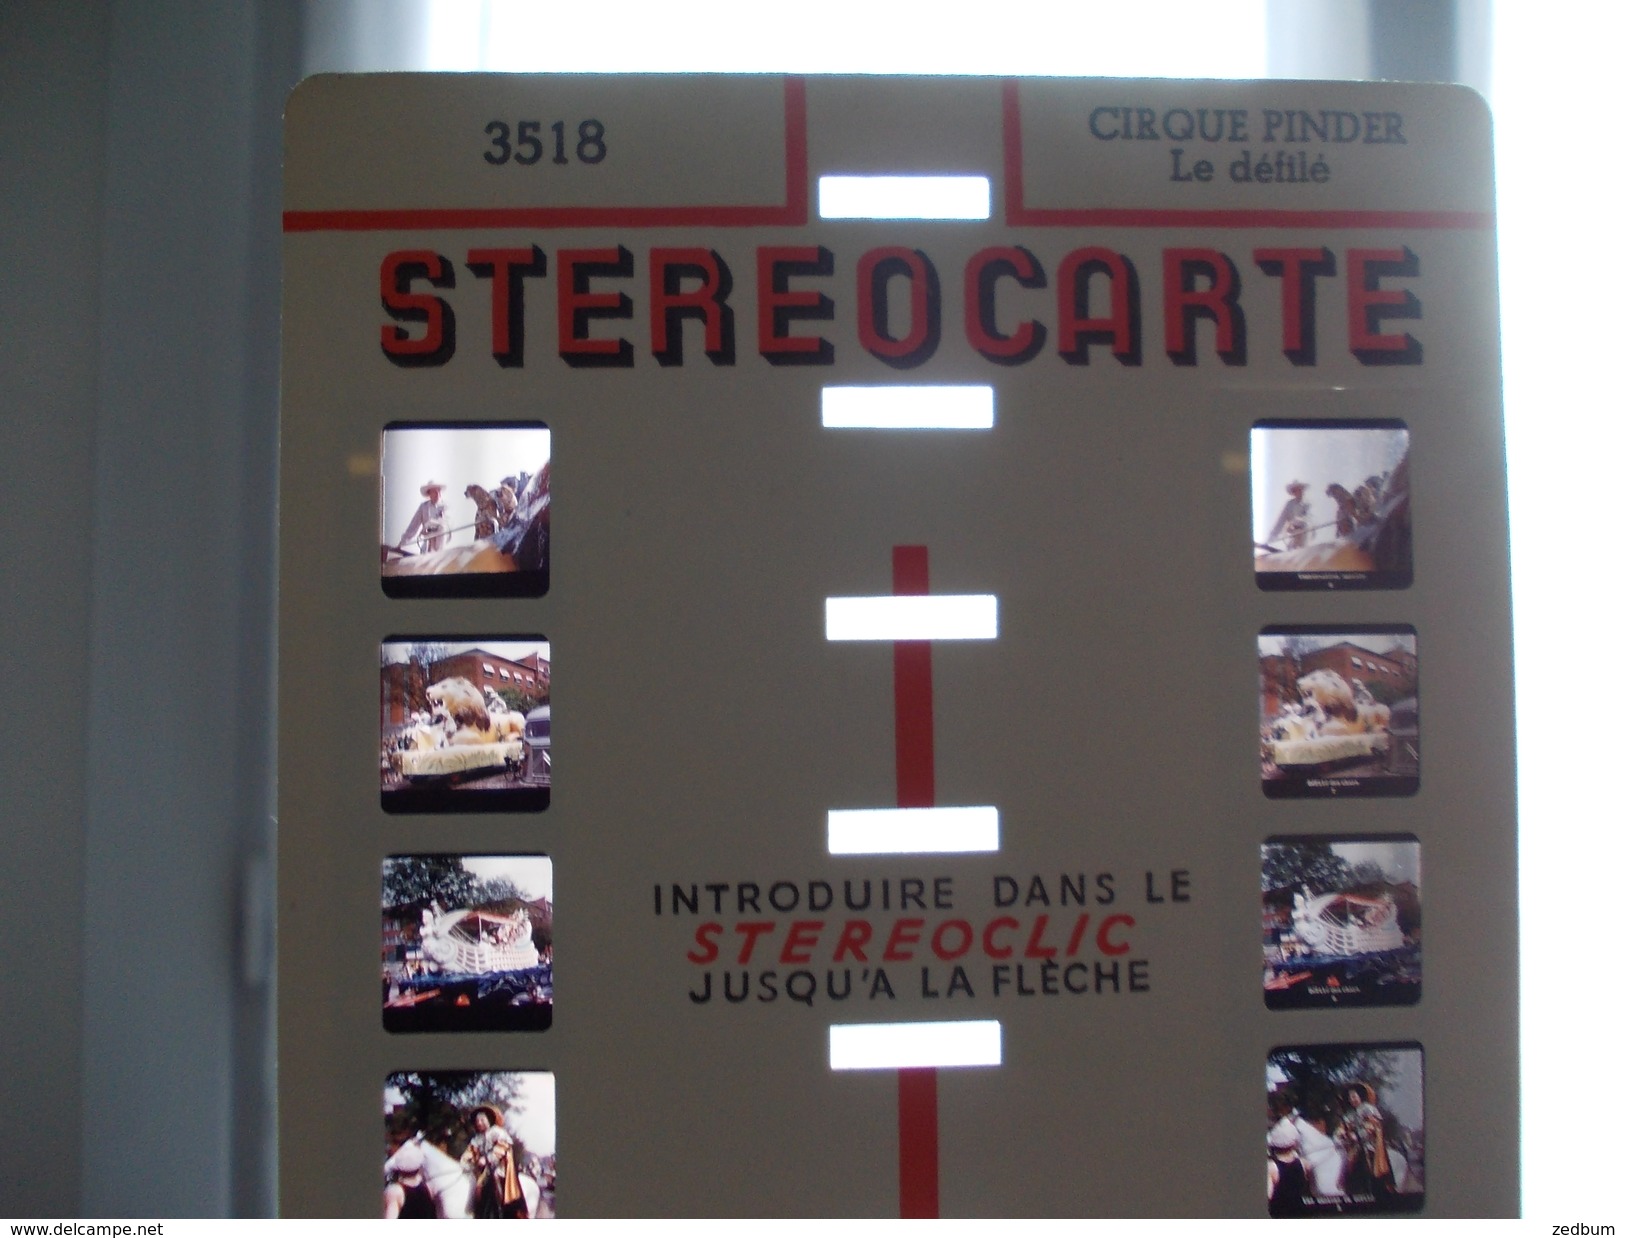 Visionneuse Stereoclic Avec Stereocarte Sur Le Cirque Pinder Le Défilé - Stereoscopes - Side-by-side Viewers